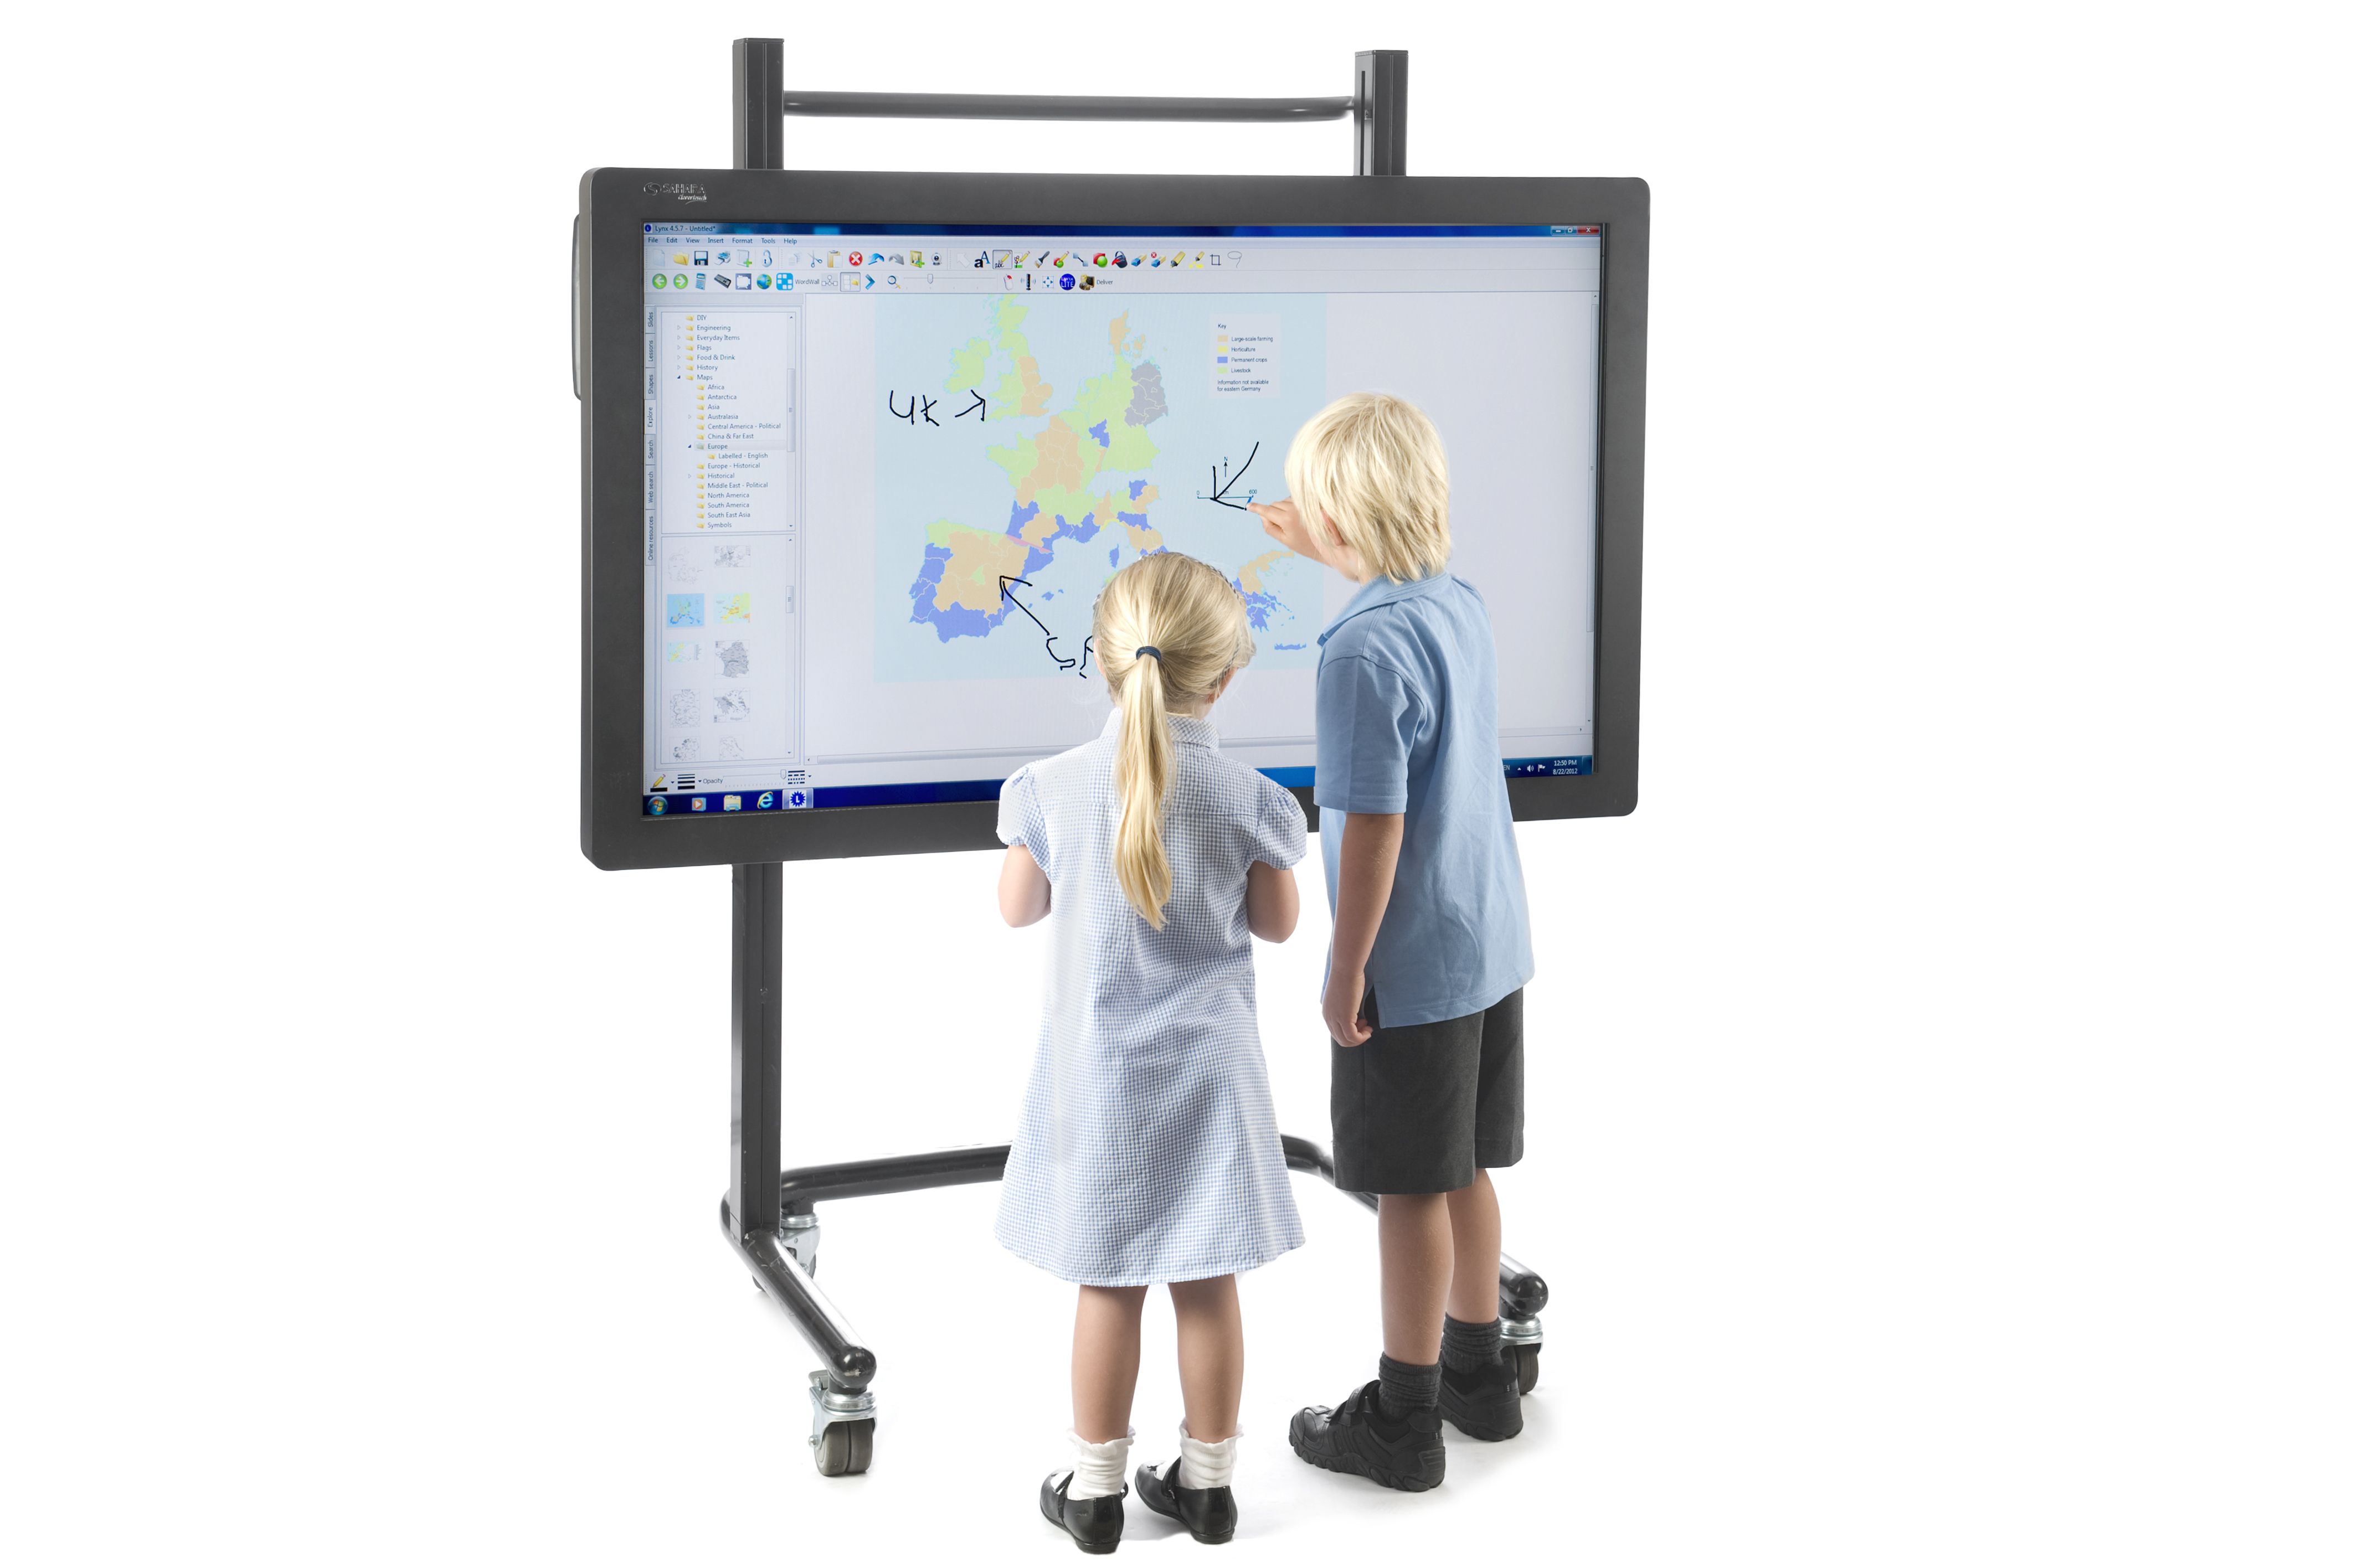 Интерактивные образовательные средства. Интерактивная доска. Экран интерактивной доски. Интерактивная доска для детей. Интерактивная сенсорная панель.